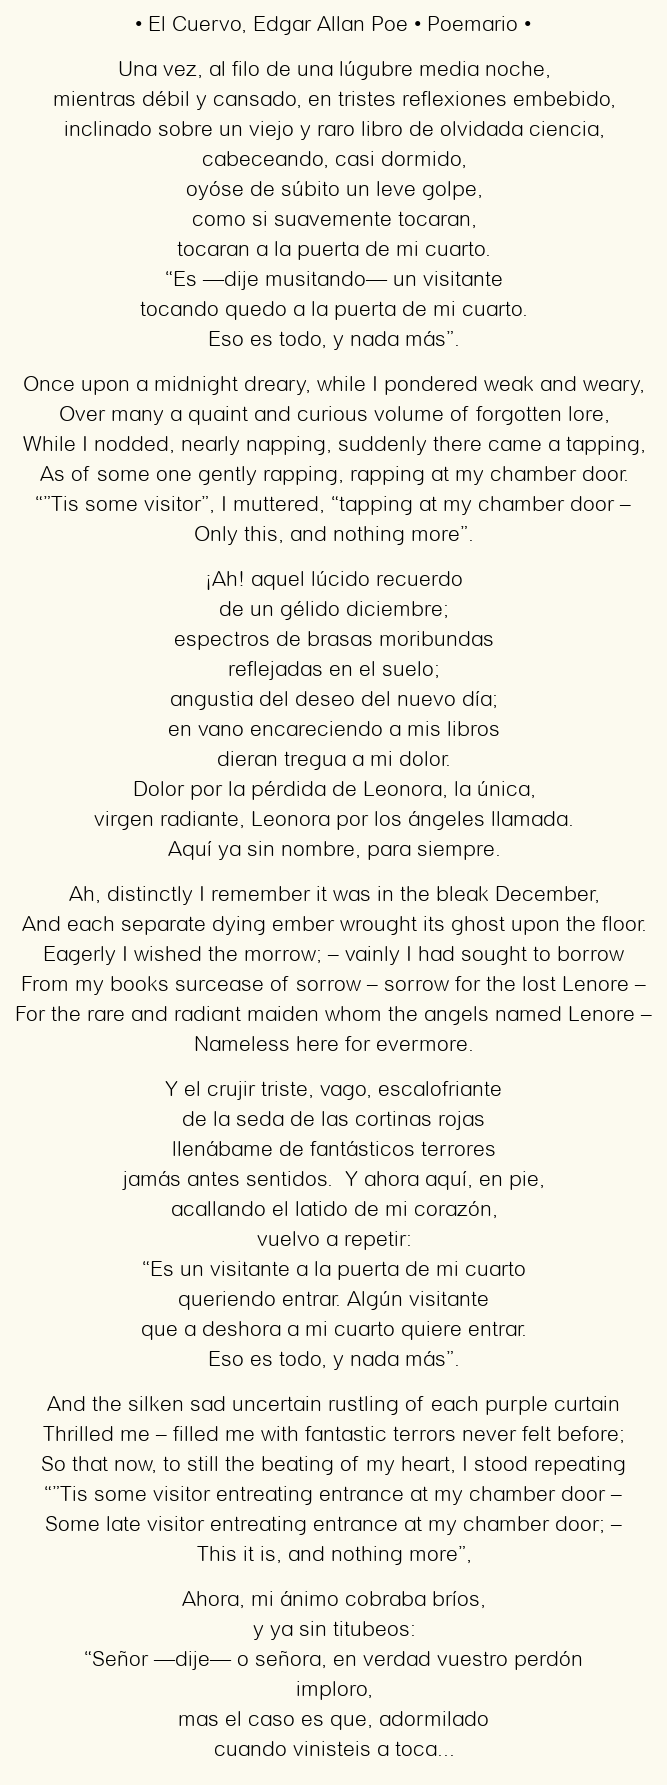 Imagen con el poema El Cuervo, por Edgar Allan Poe